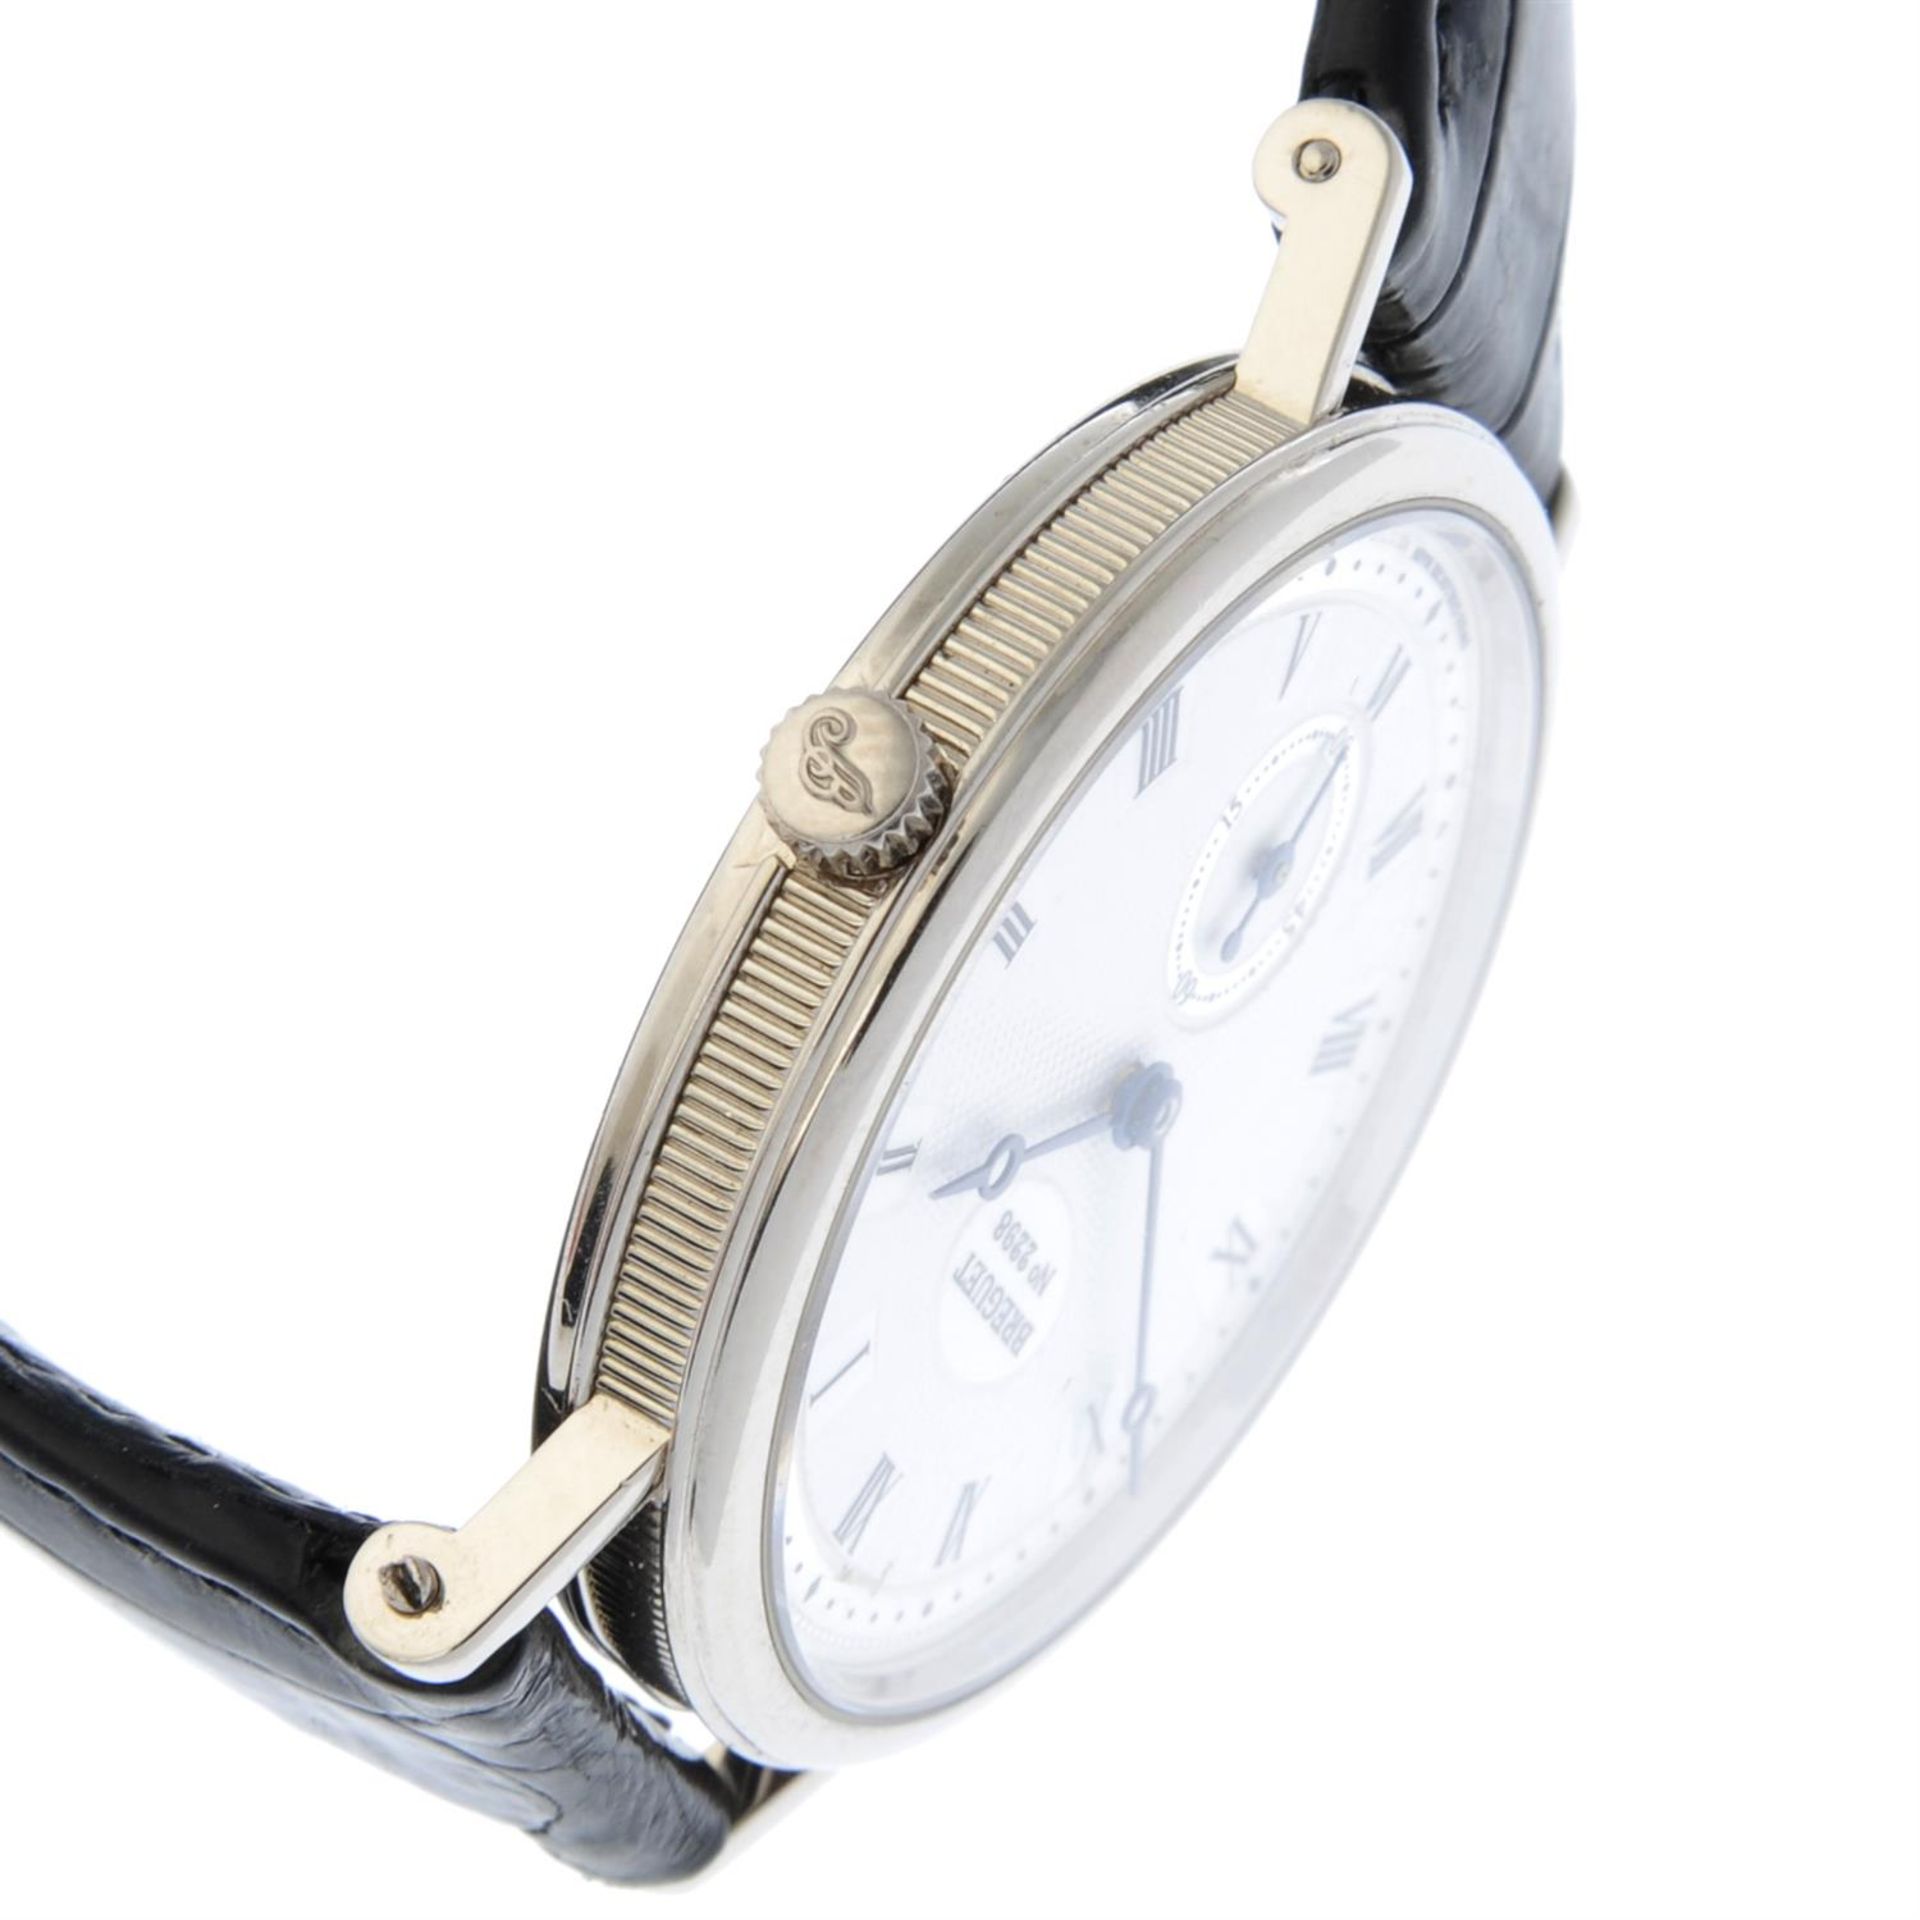 BREGUET - an 18ct white gold Classique 3910 wrist watch, 34mm. - Bild 3 aus 5